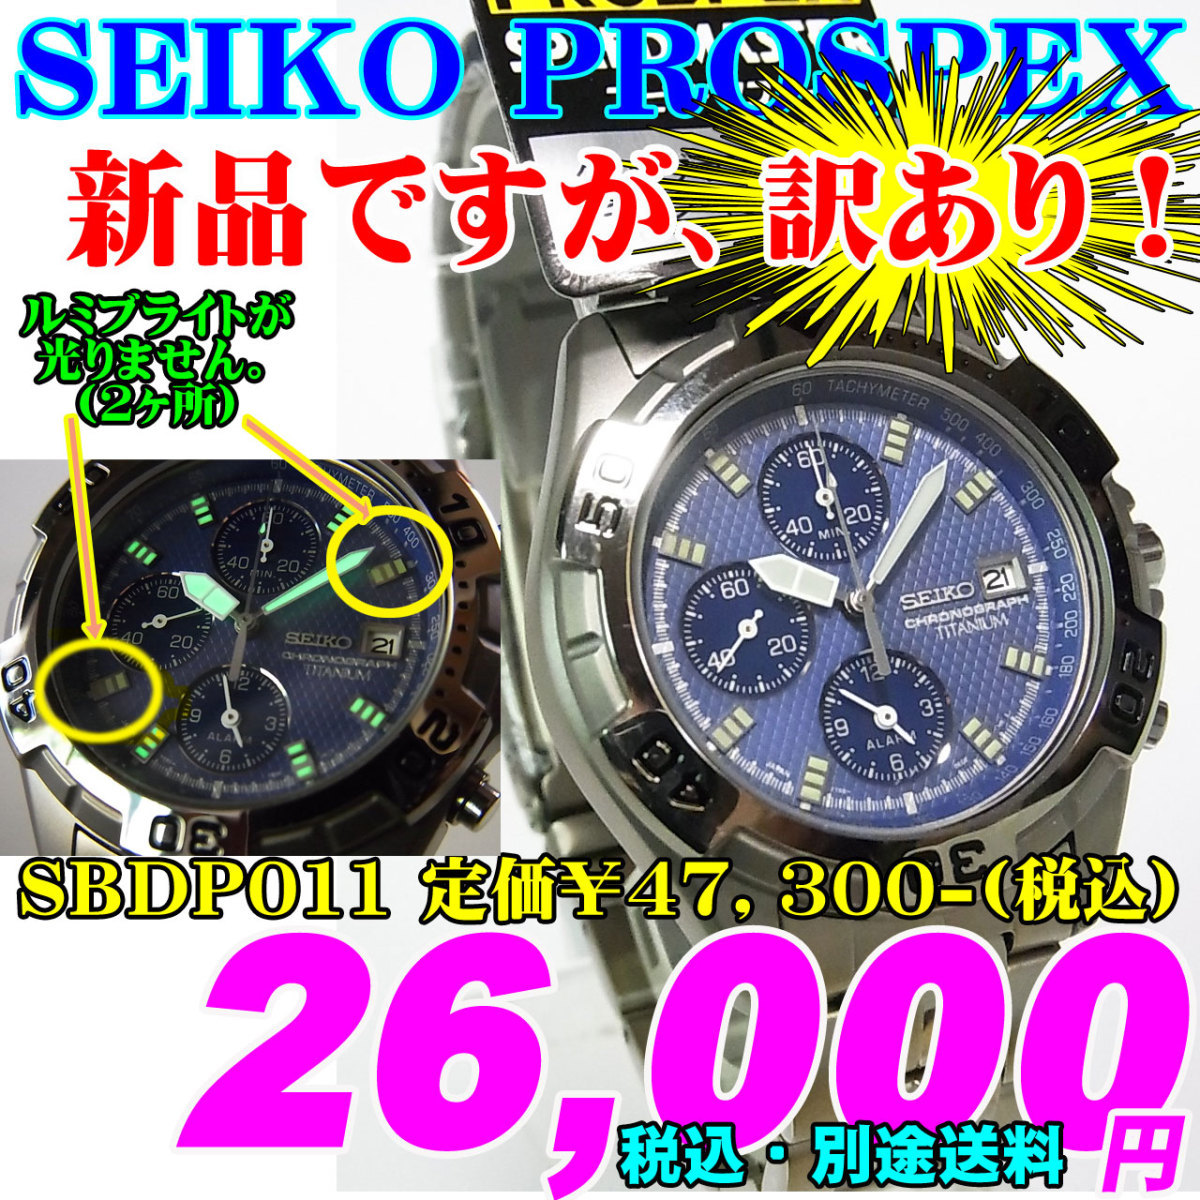 新品ですが・・・訳あり SEIKO PROSPEX セイコー プロスペックス SBDP011 定価￥47,300-(税込)新品です。 チタン クォーツ お買い得